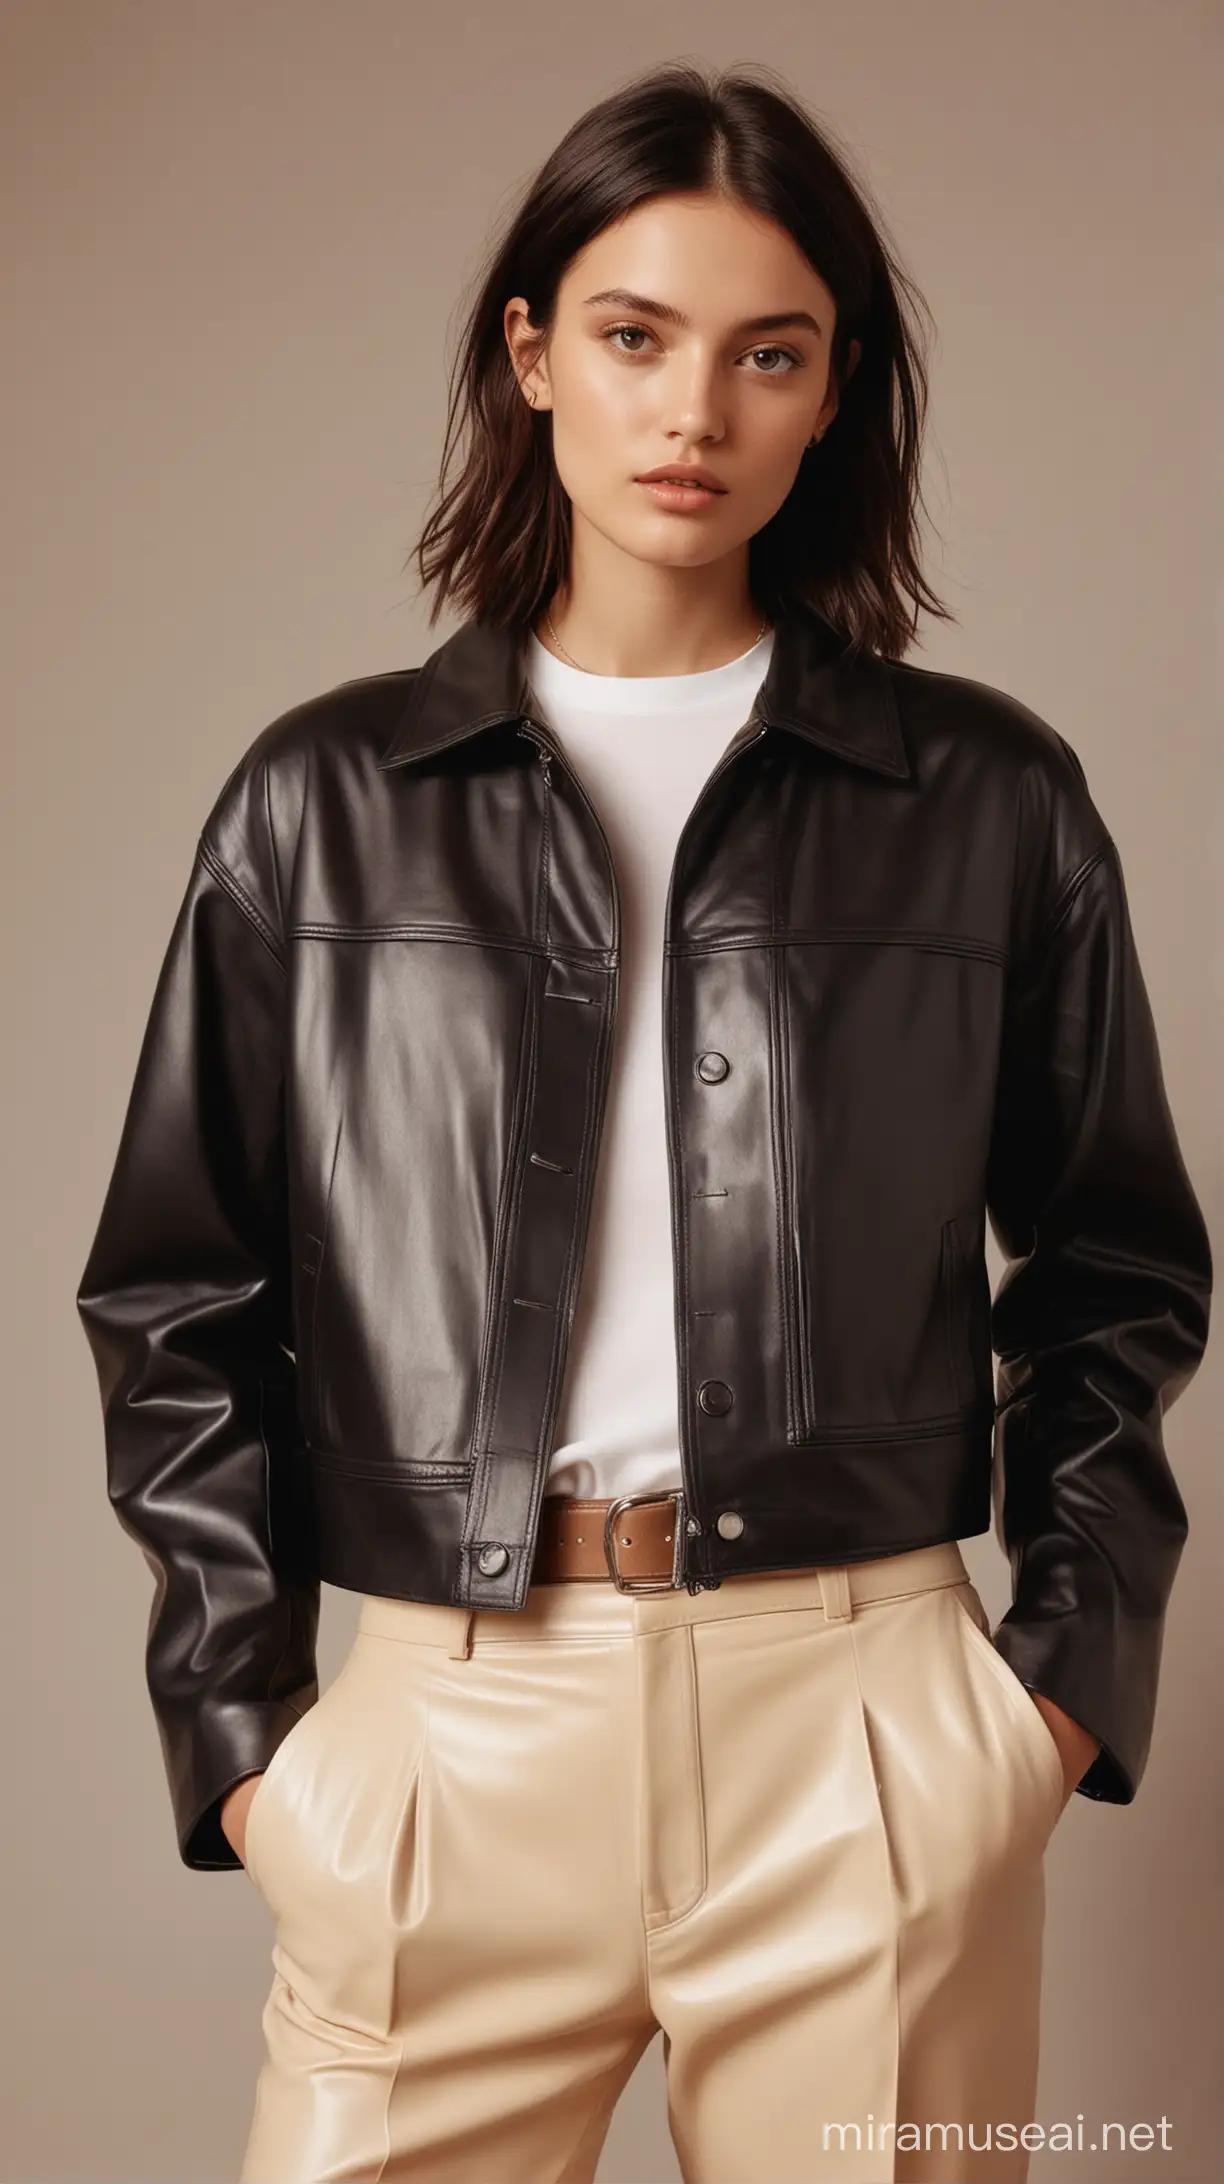 Y2K Fashion Boxy Leather Jacket Vogue Aesthetic